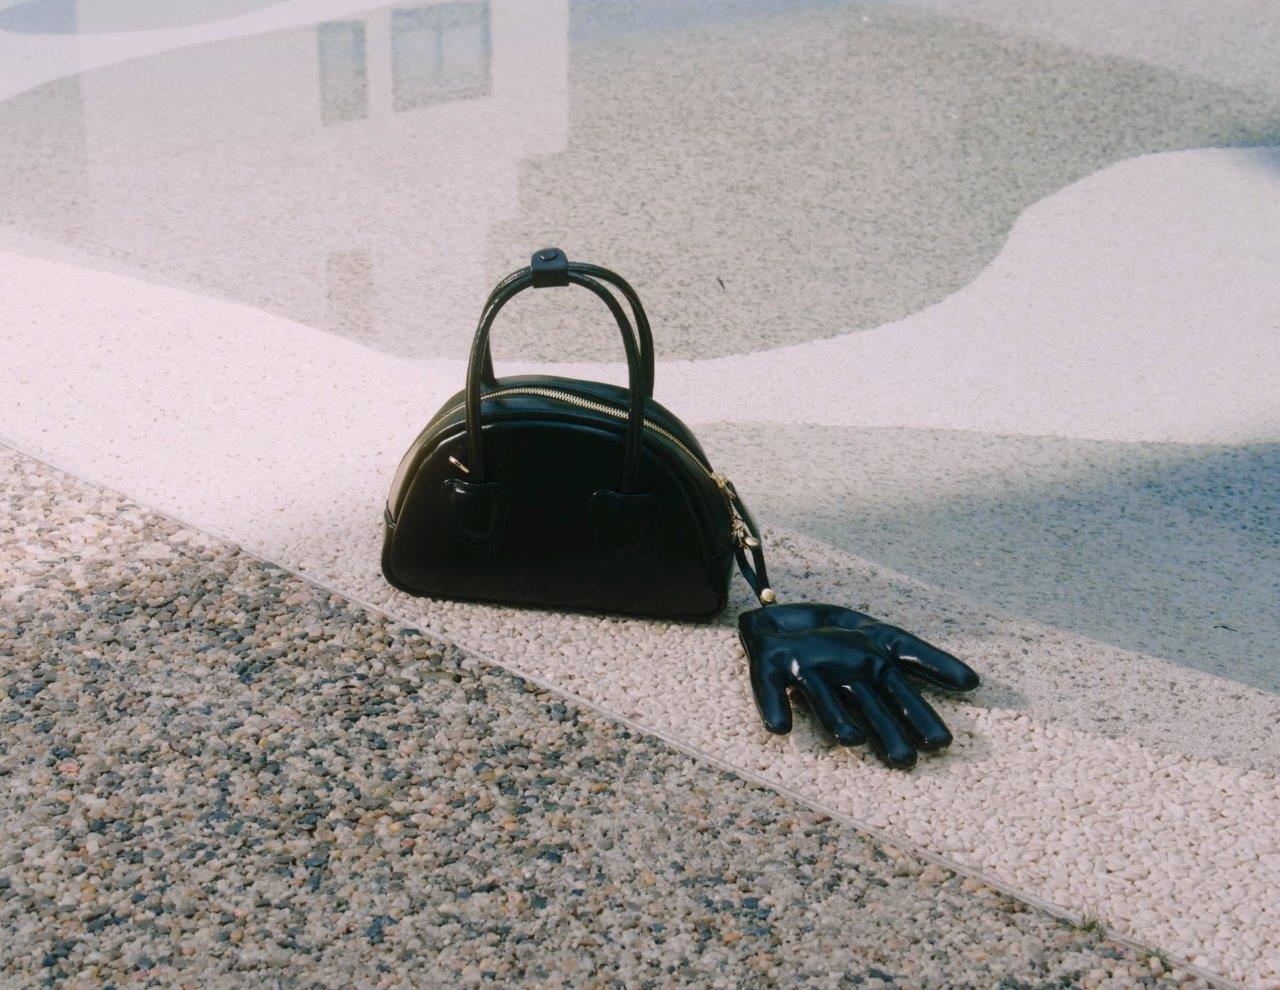 TACOS Handbag in Black color large size (M)